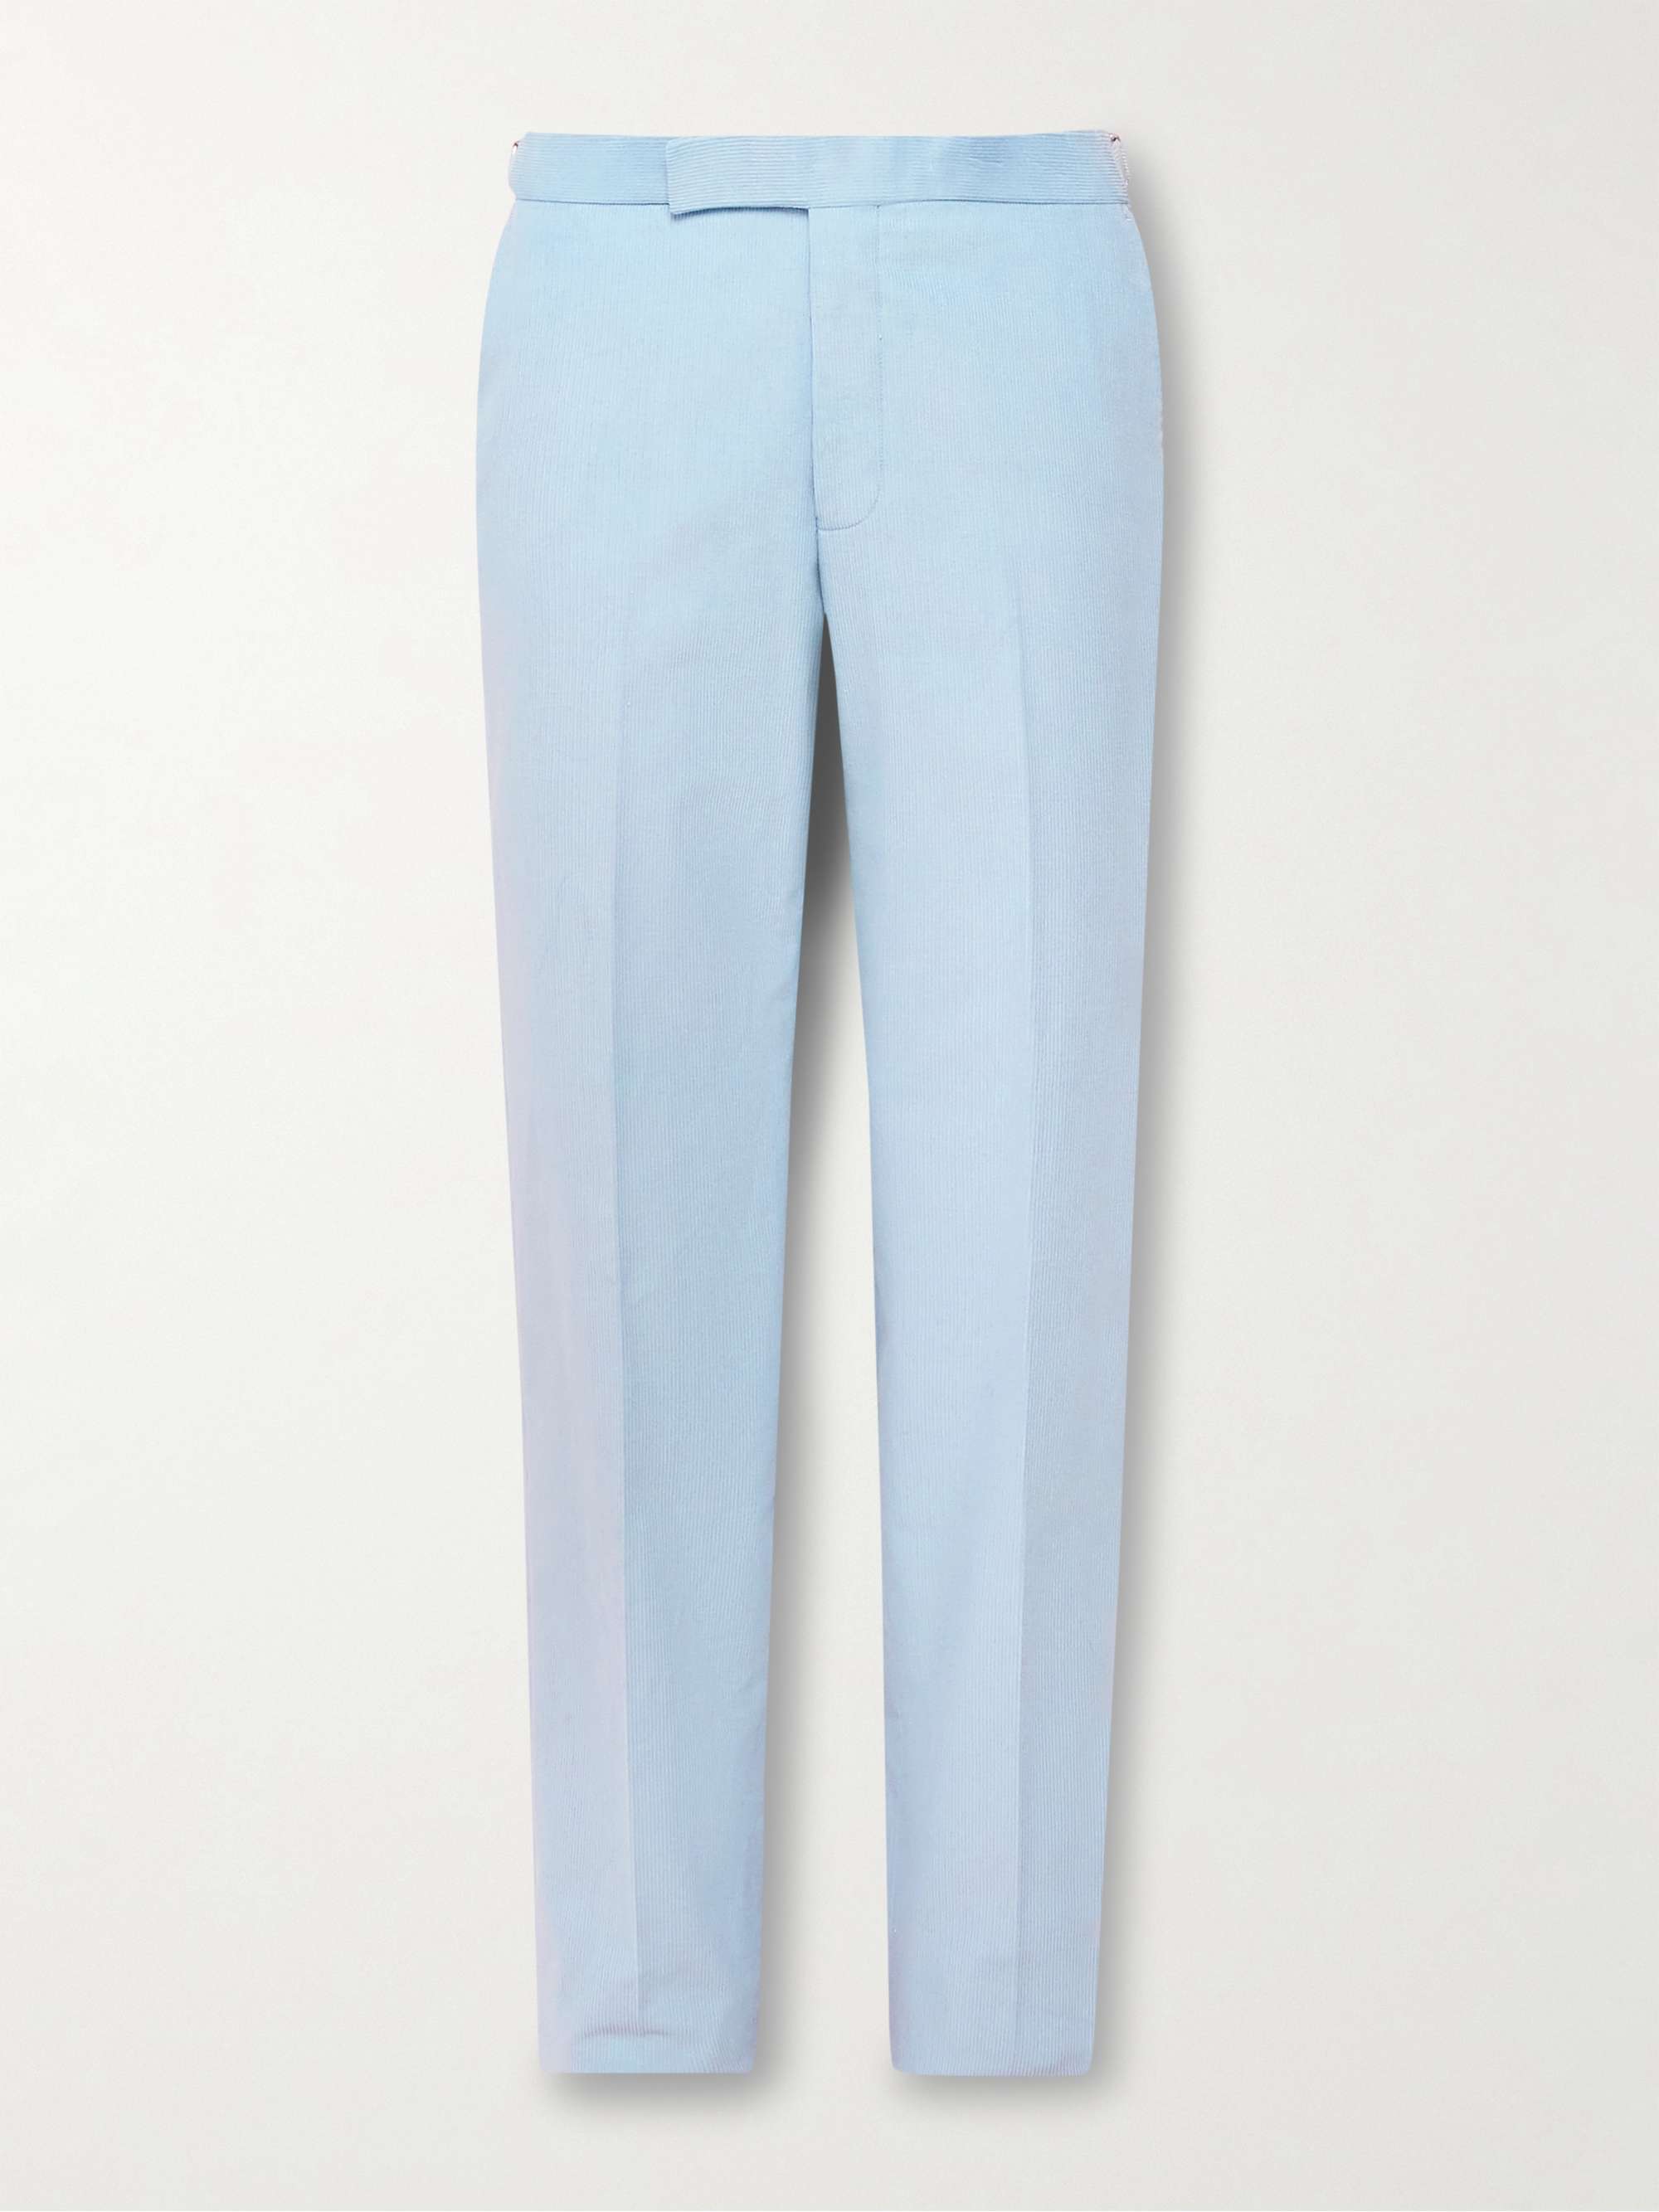 Buy Men Blue Solid Slim Fit Trousers Online - 704506 | Van Heusen